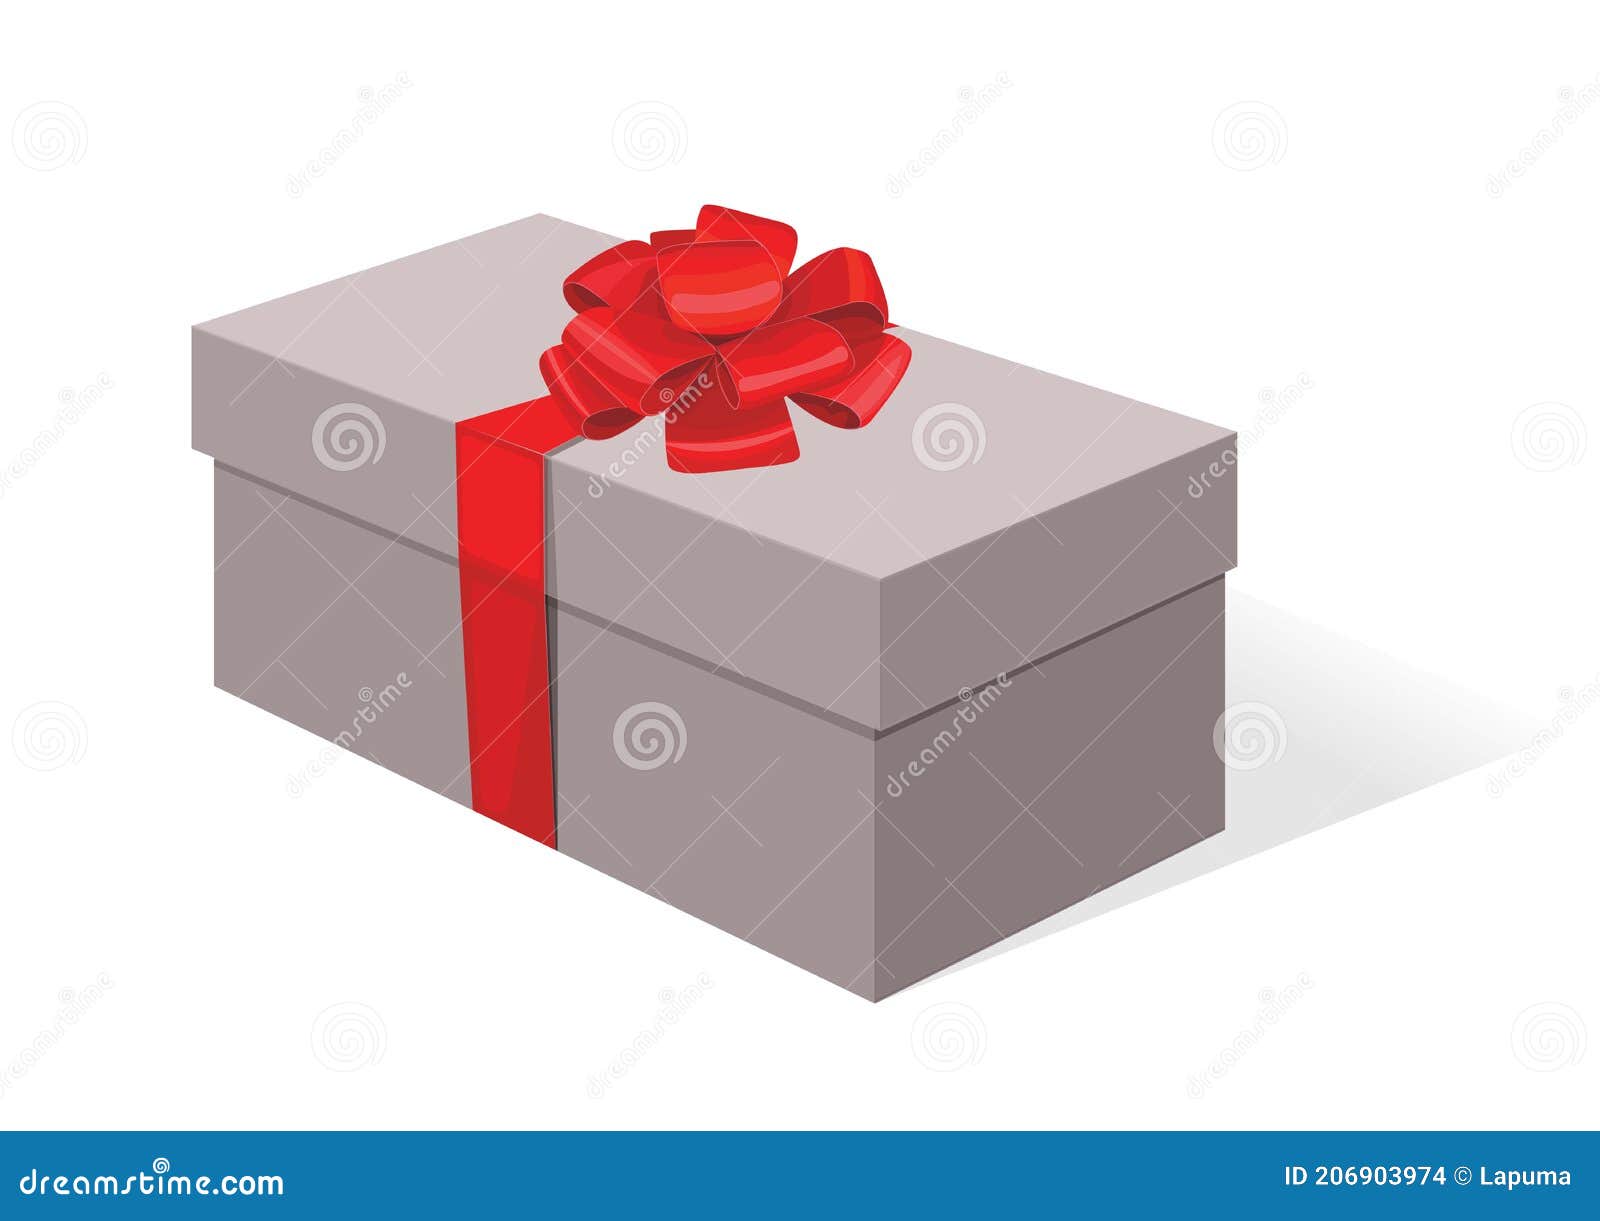  Cajas de regalo de cartón, cajas de regalo con tapas